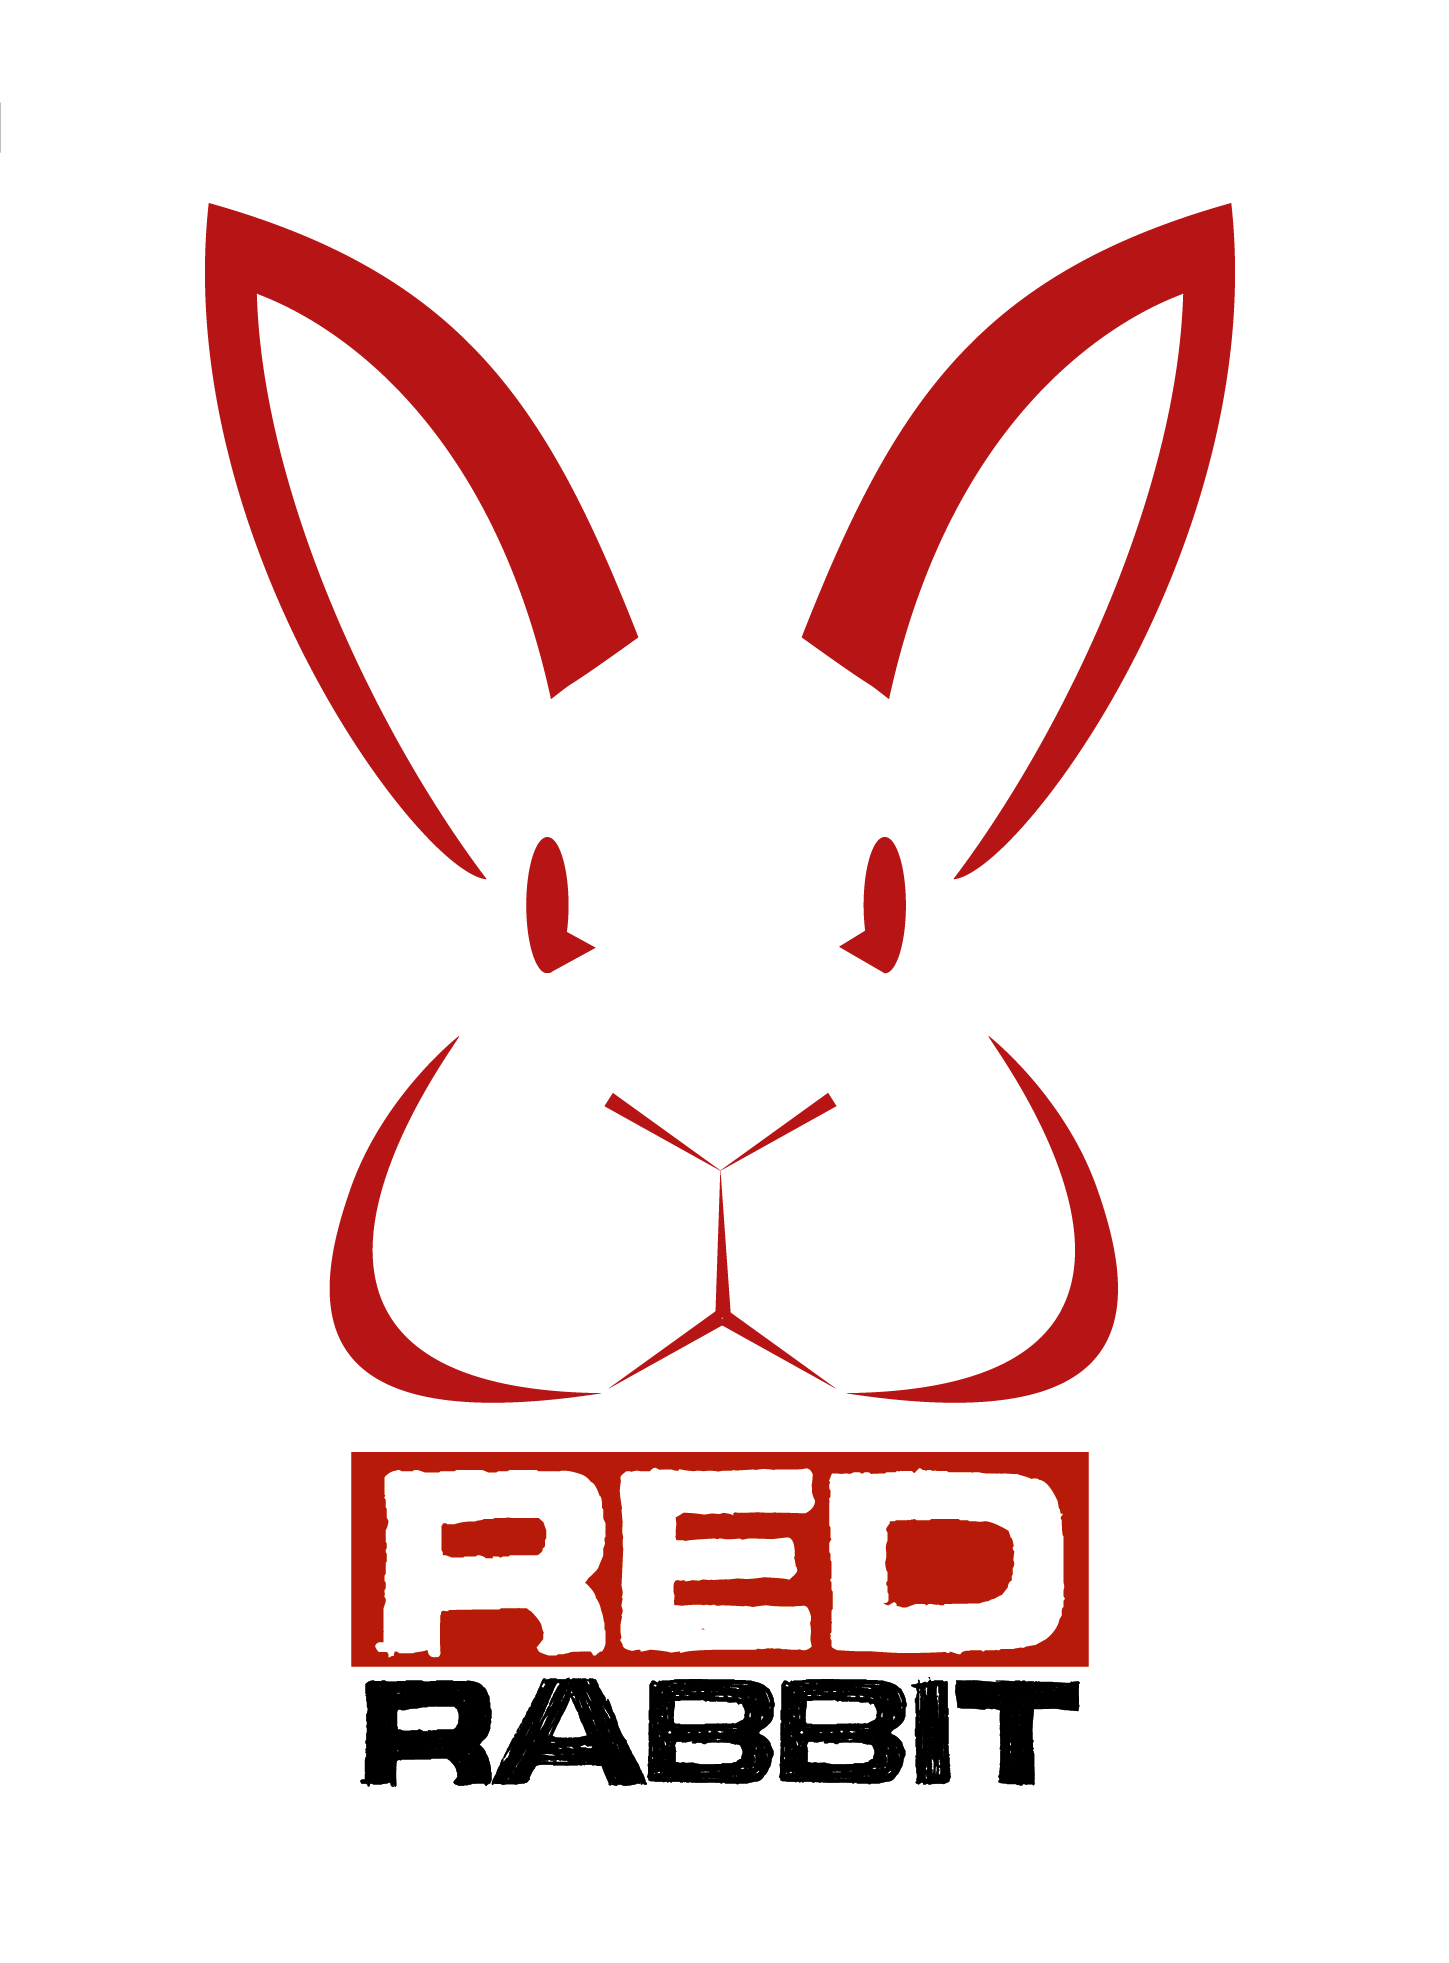 Cool Rabbit Logo - sexy logo | Design | Logos, Logo design, Design